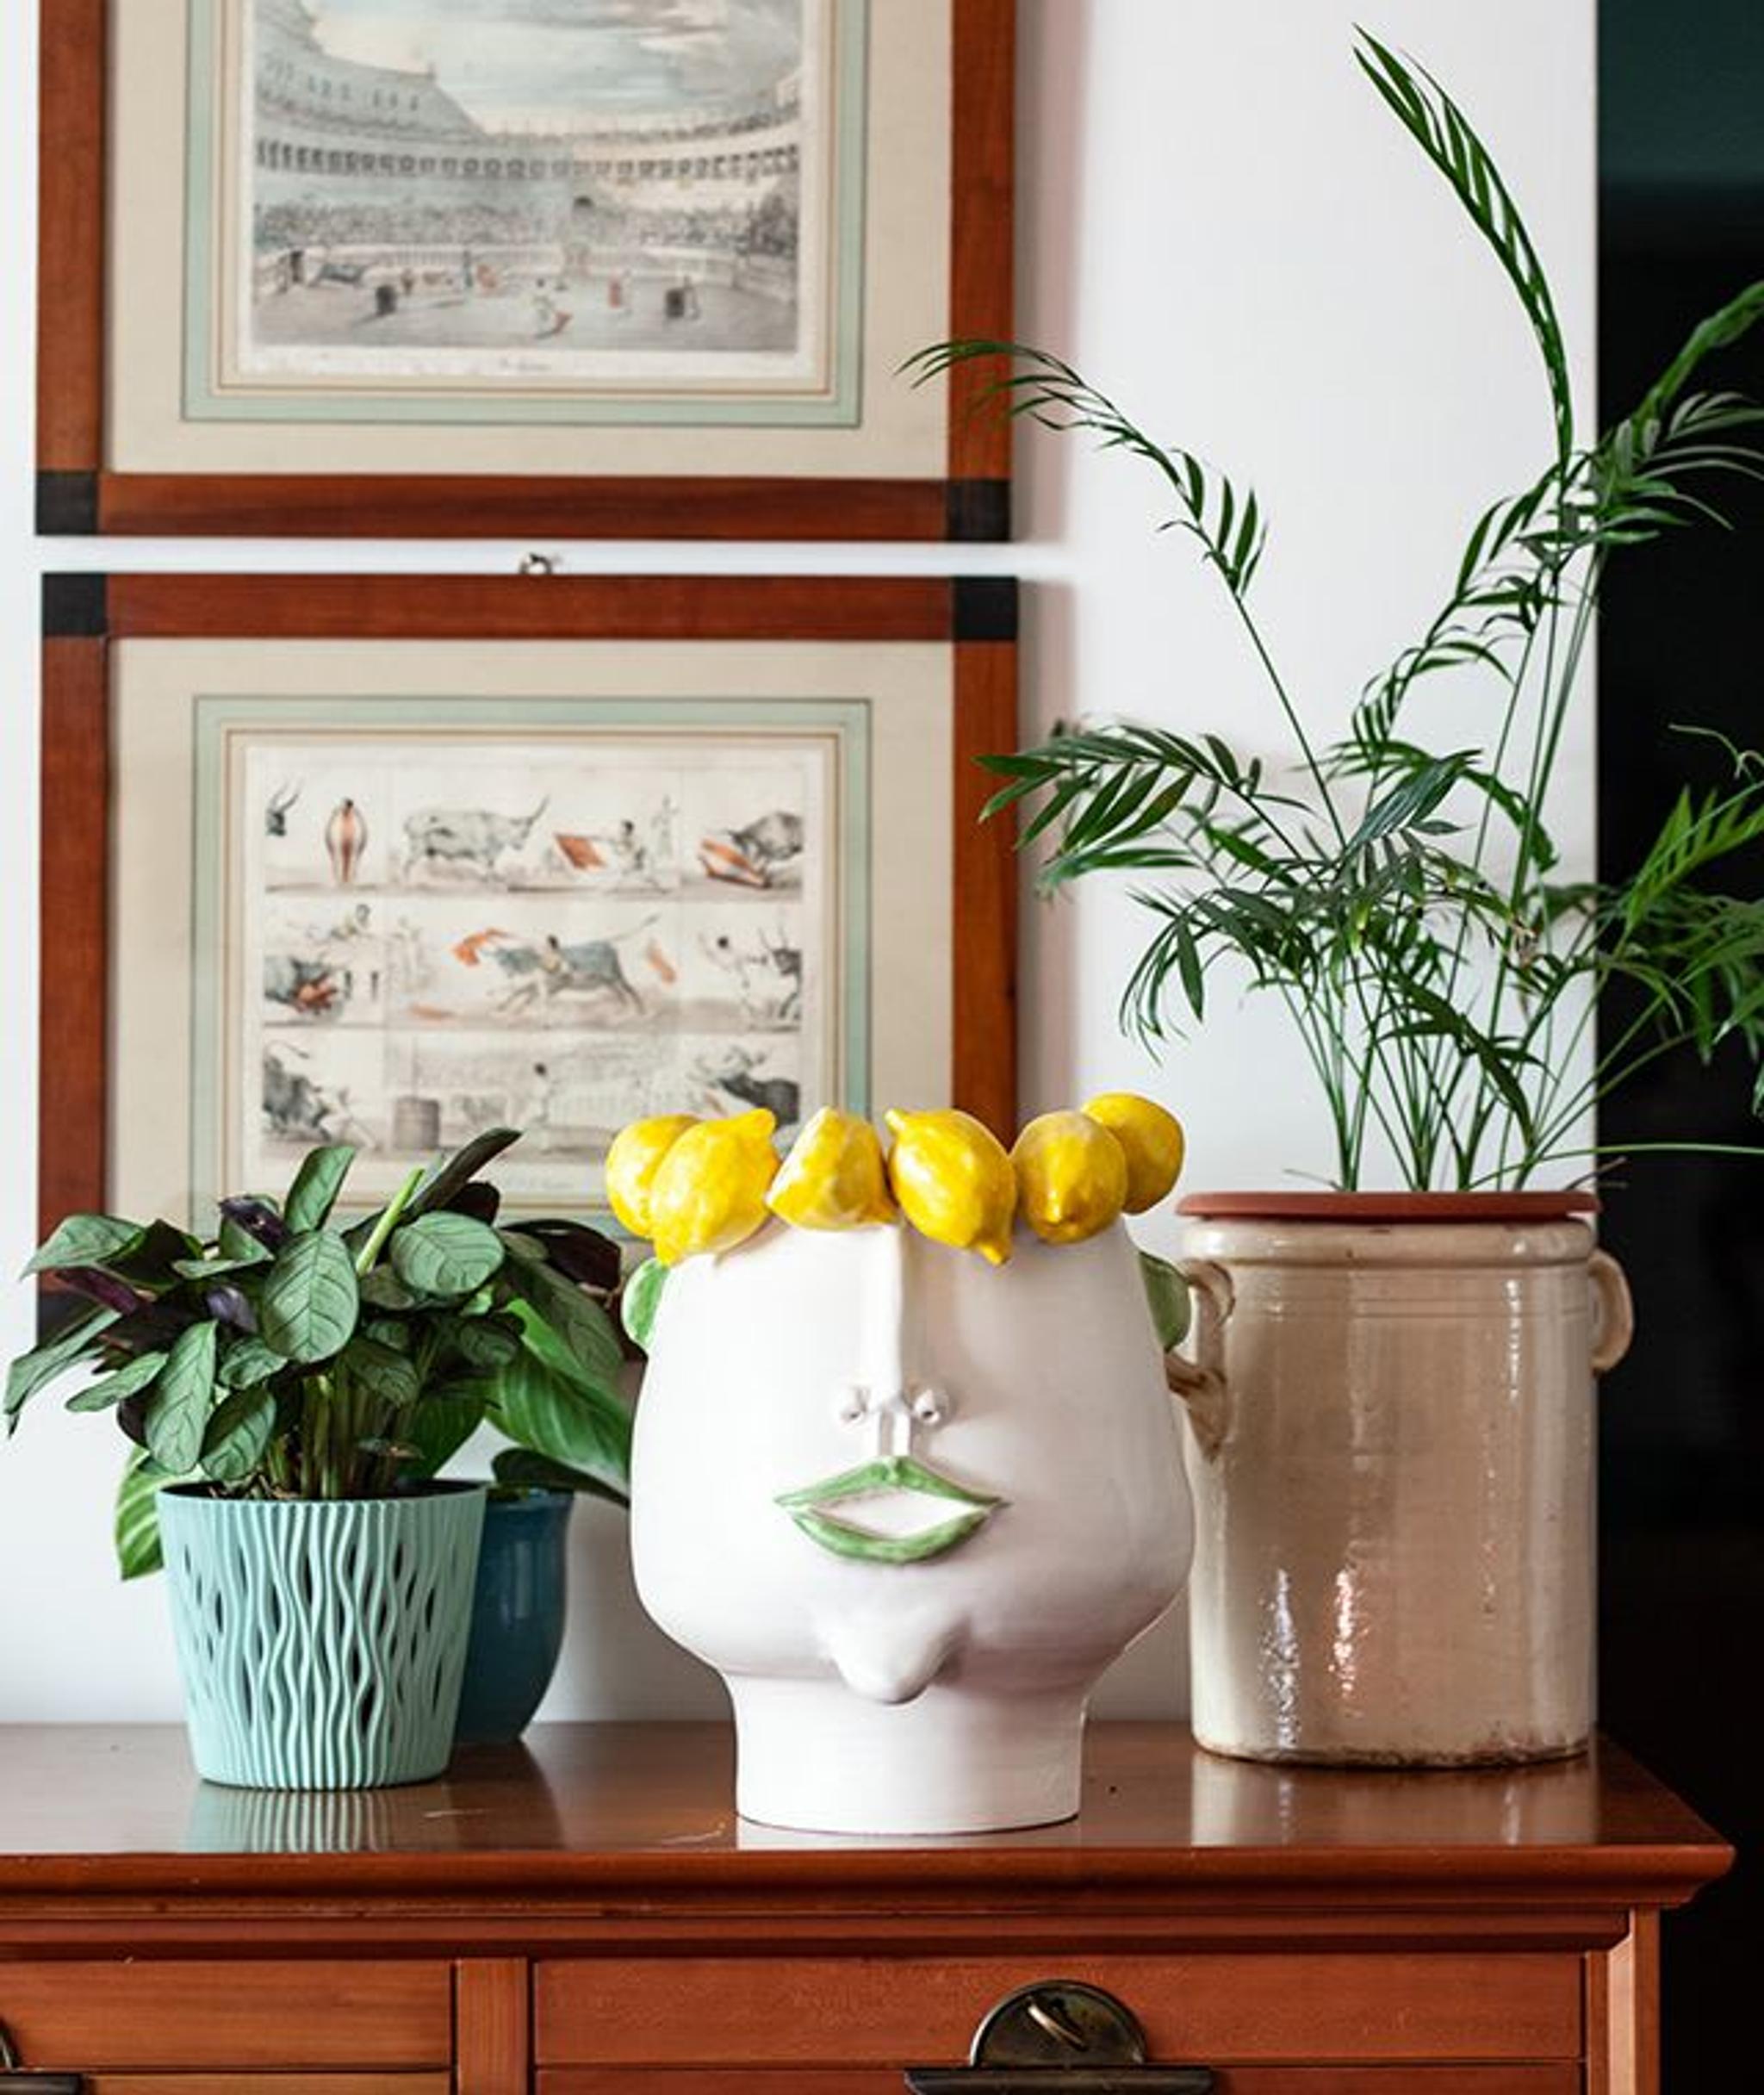 Domitilla Lemon Picker Head Vase by Patrizia Italiano